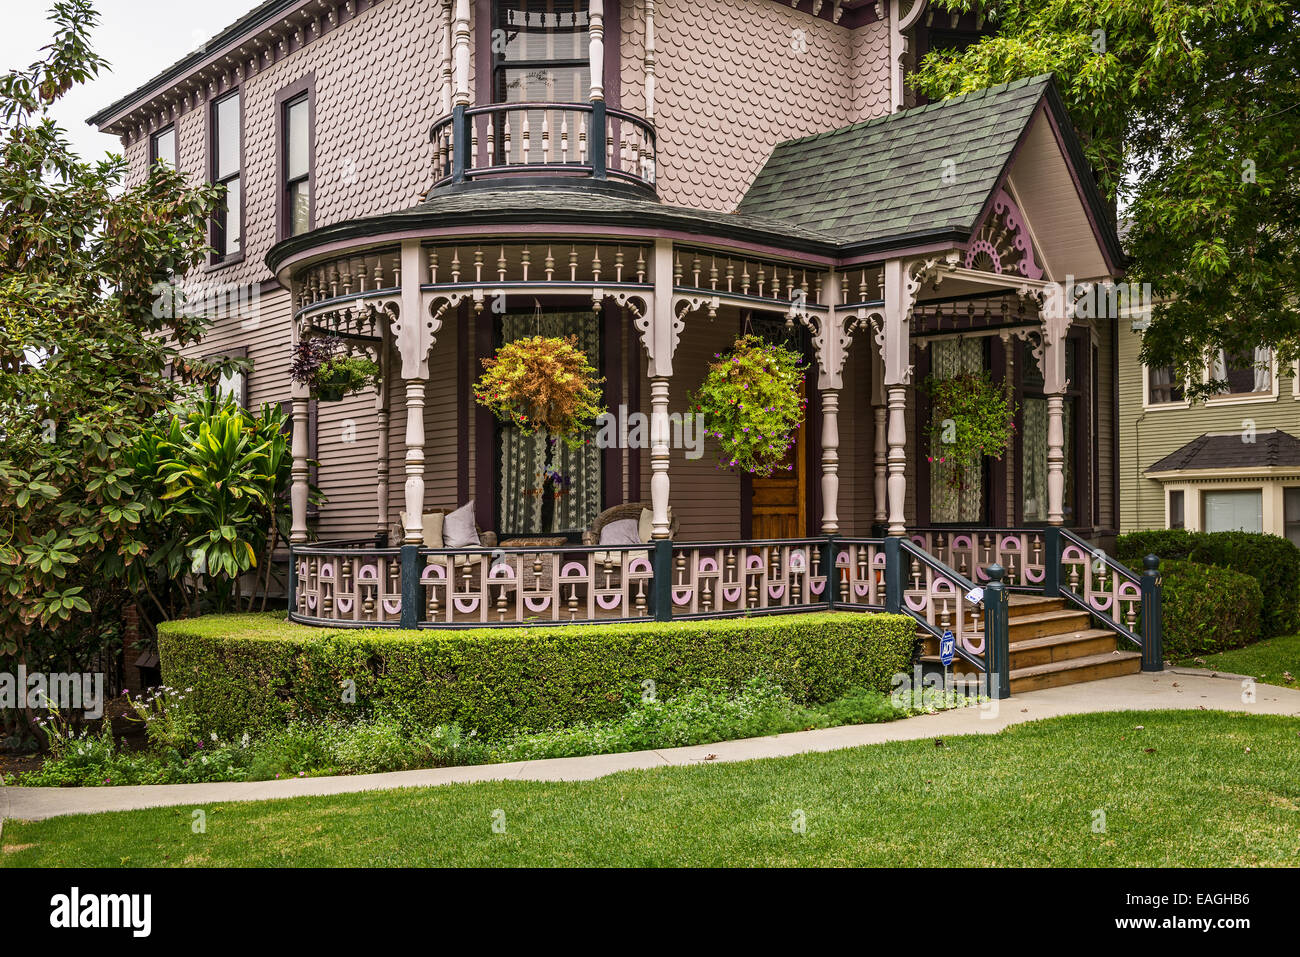 Les belles maisons victoriennes sur Carroll Avenue dans Echo Park. Banque D'Images